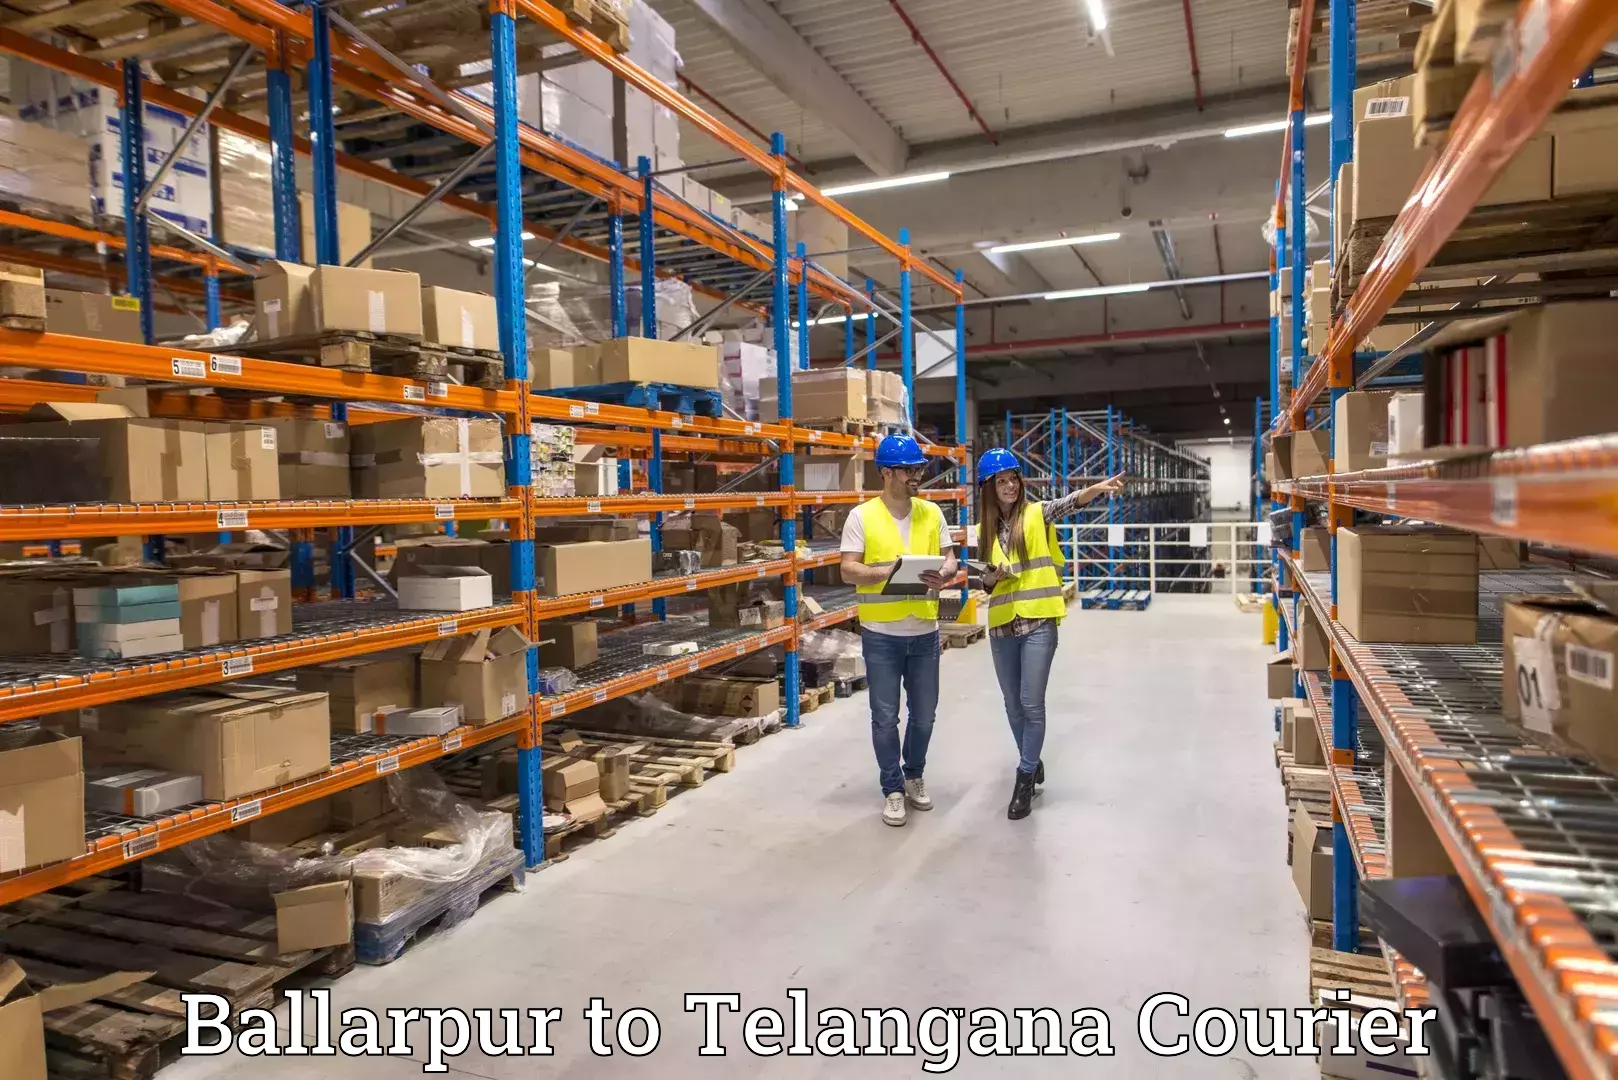 Customer-centric shipping Ballarpur to Manopad